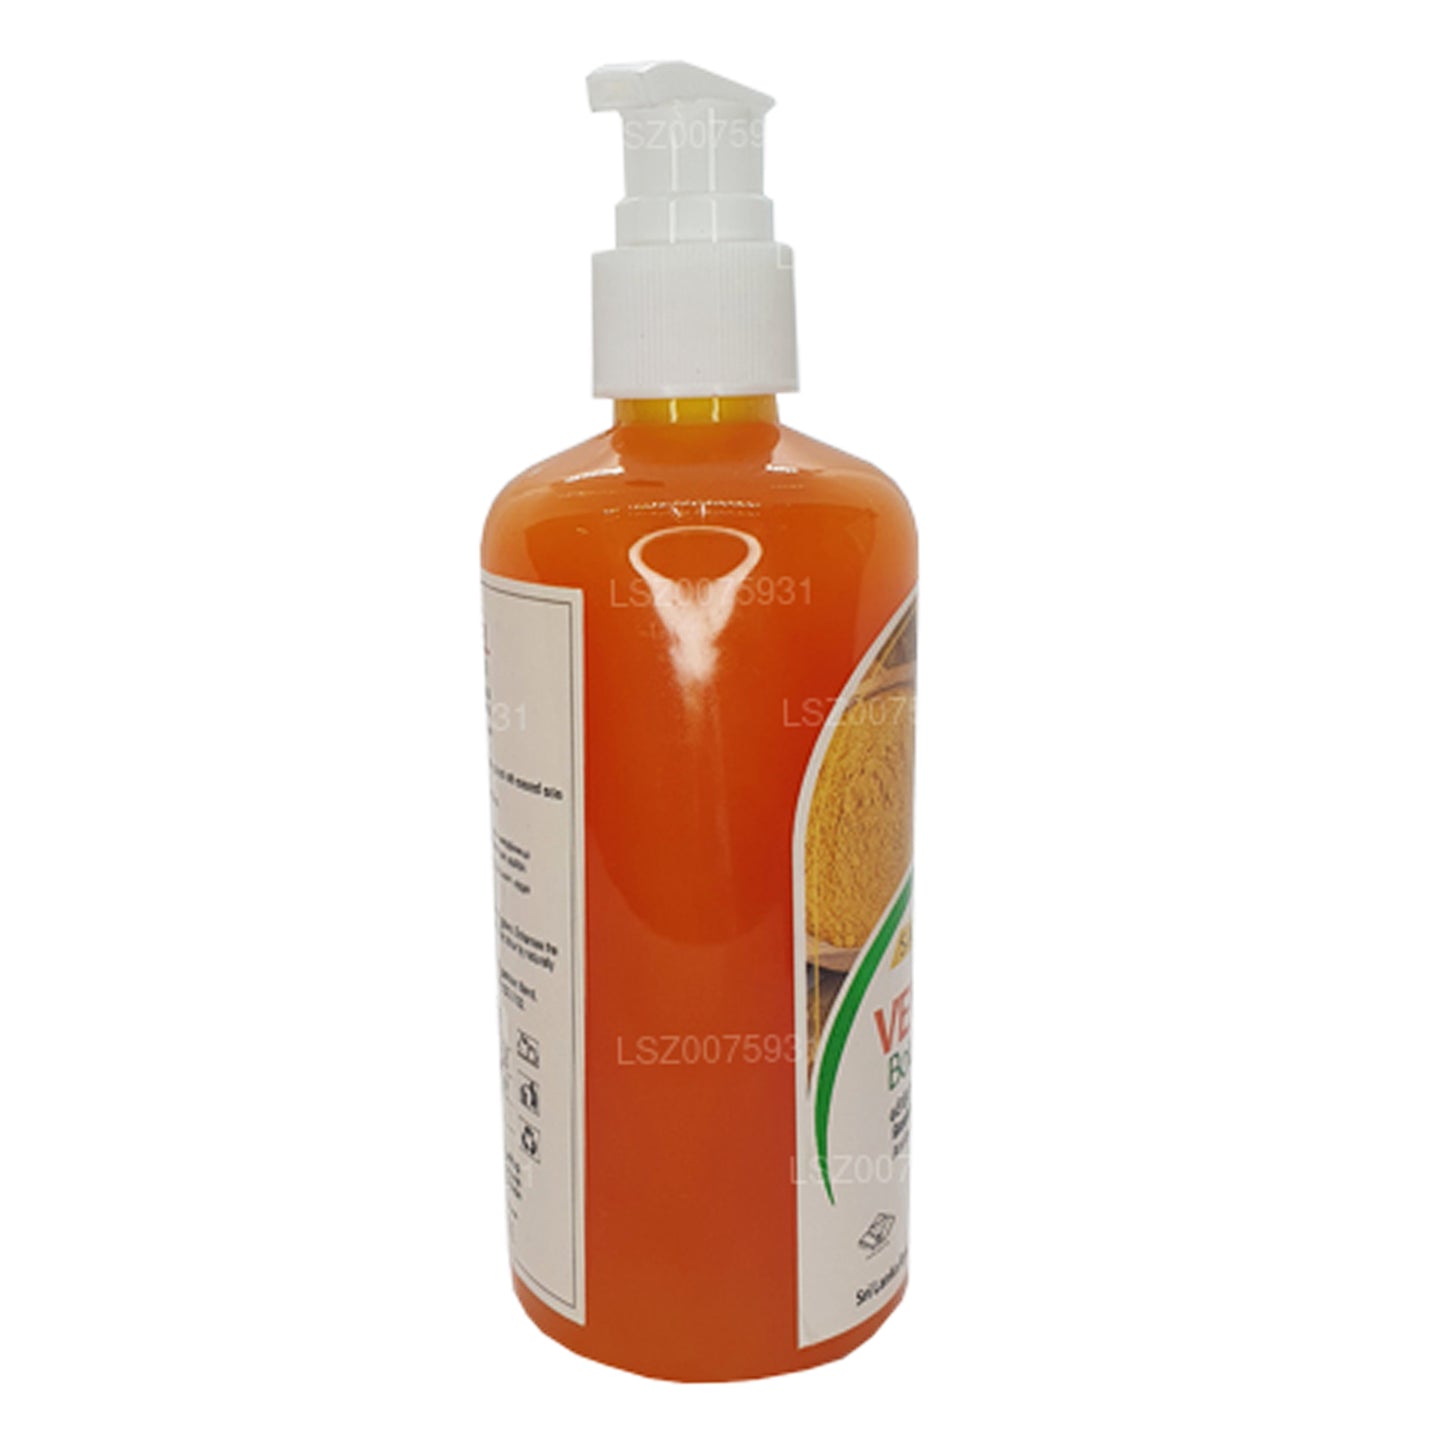 SLADC Venivel kropsvask (300 ml)